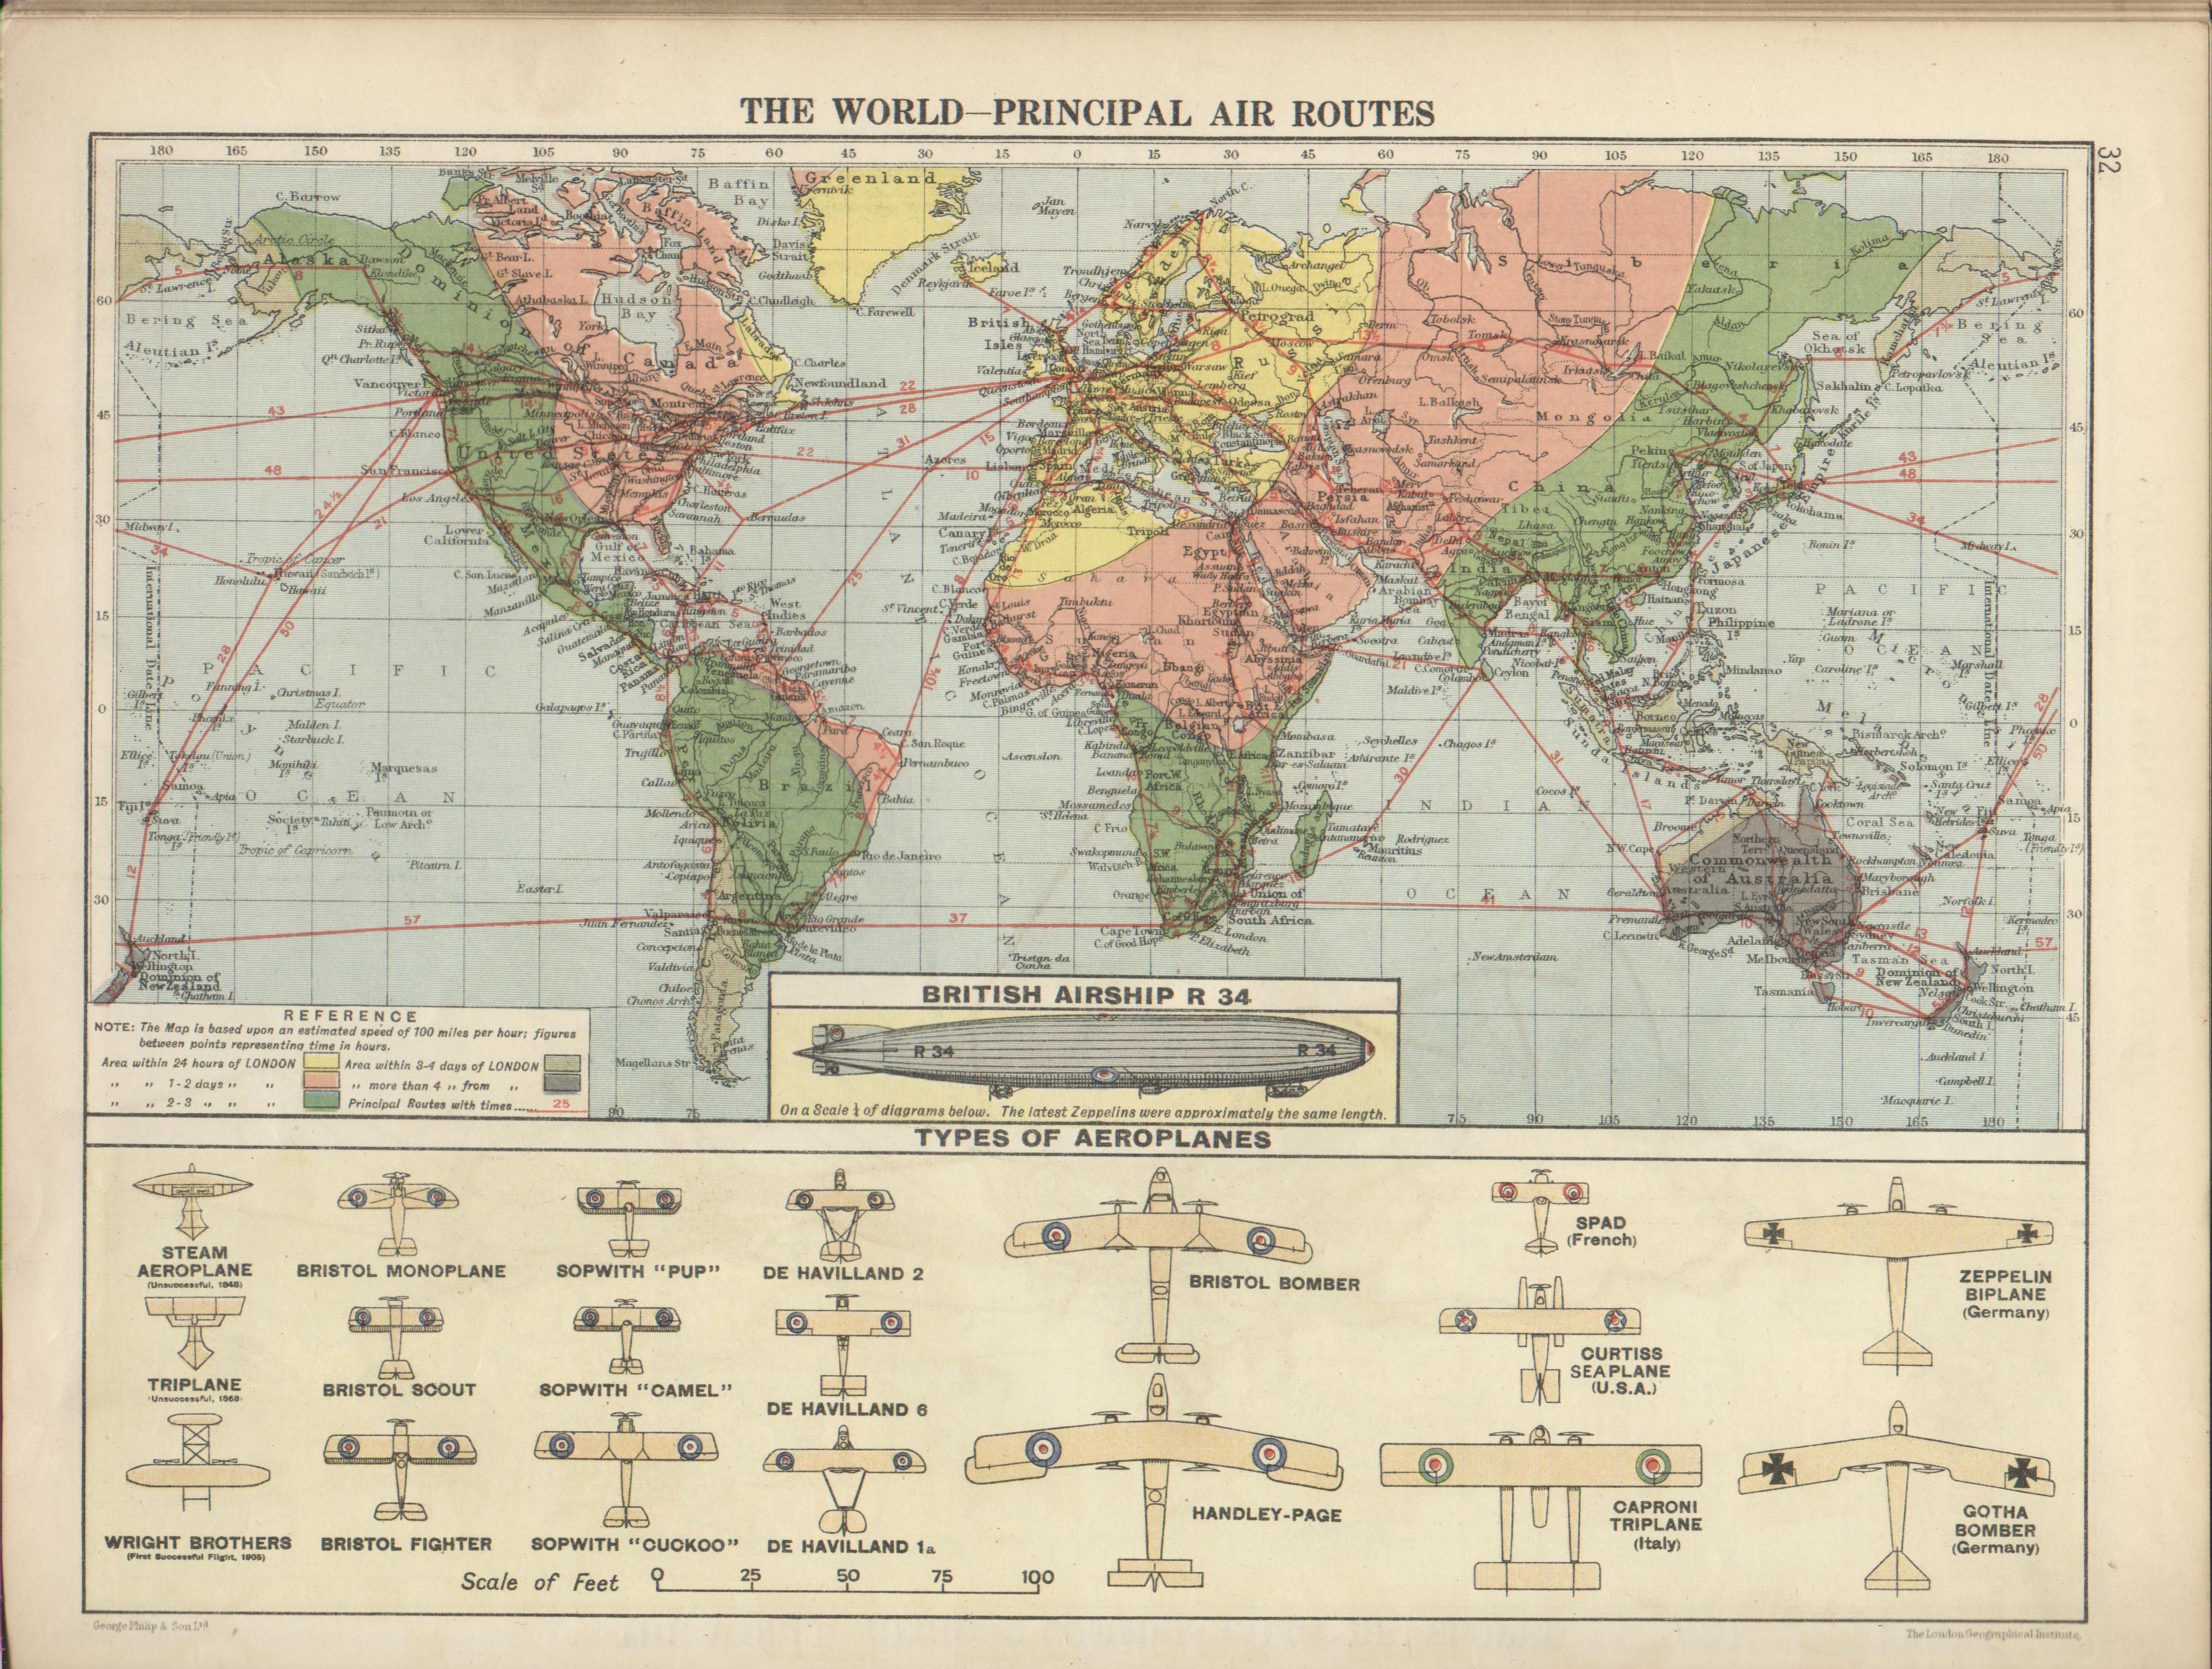 aircraft, maps, airports, world map - desktop wallpaper